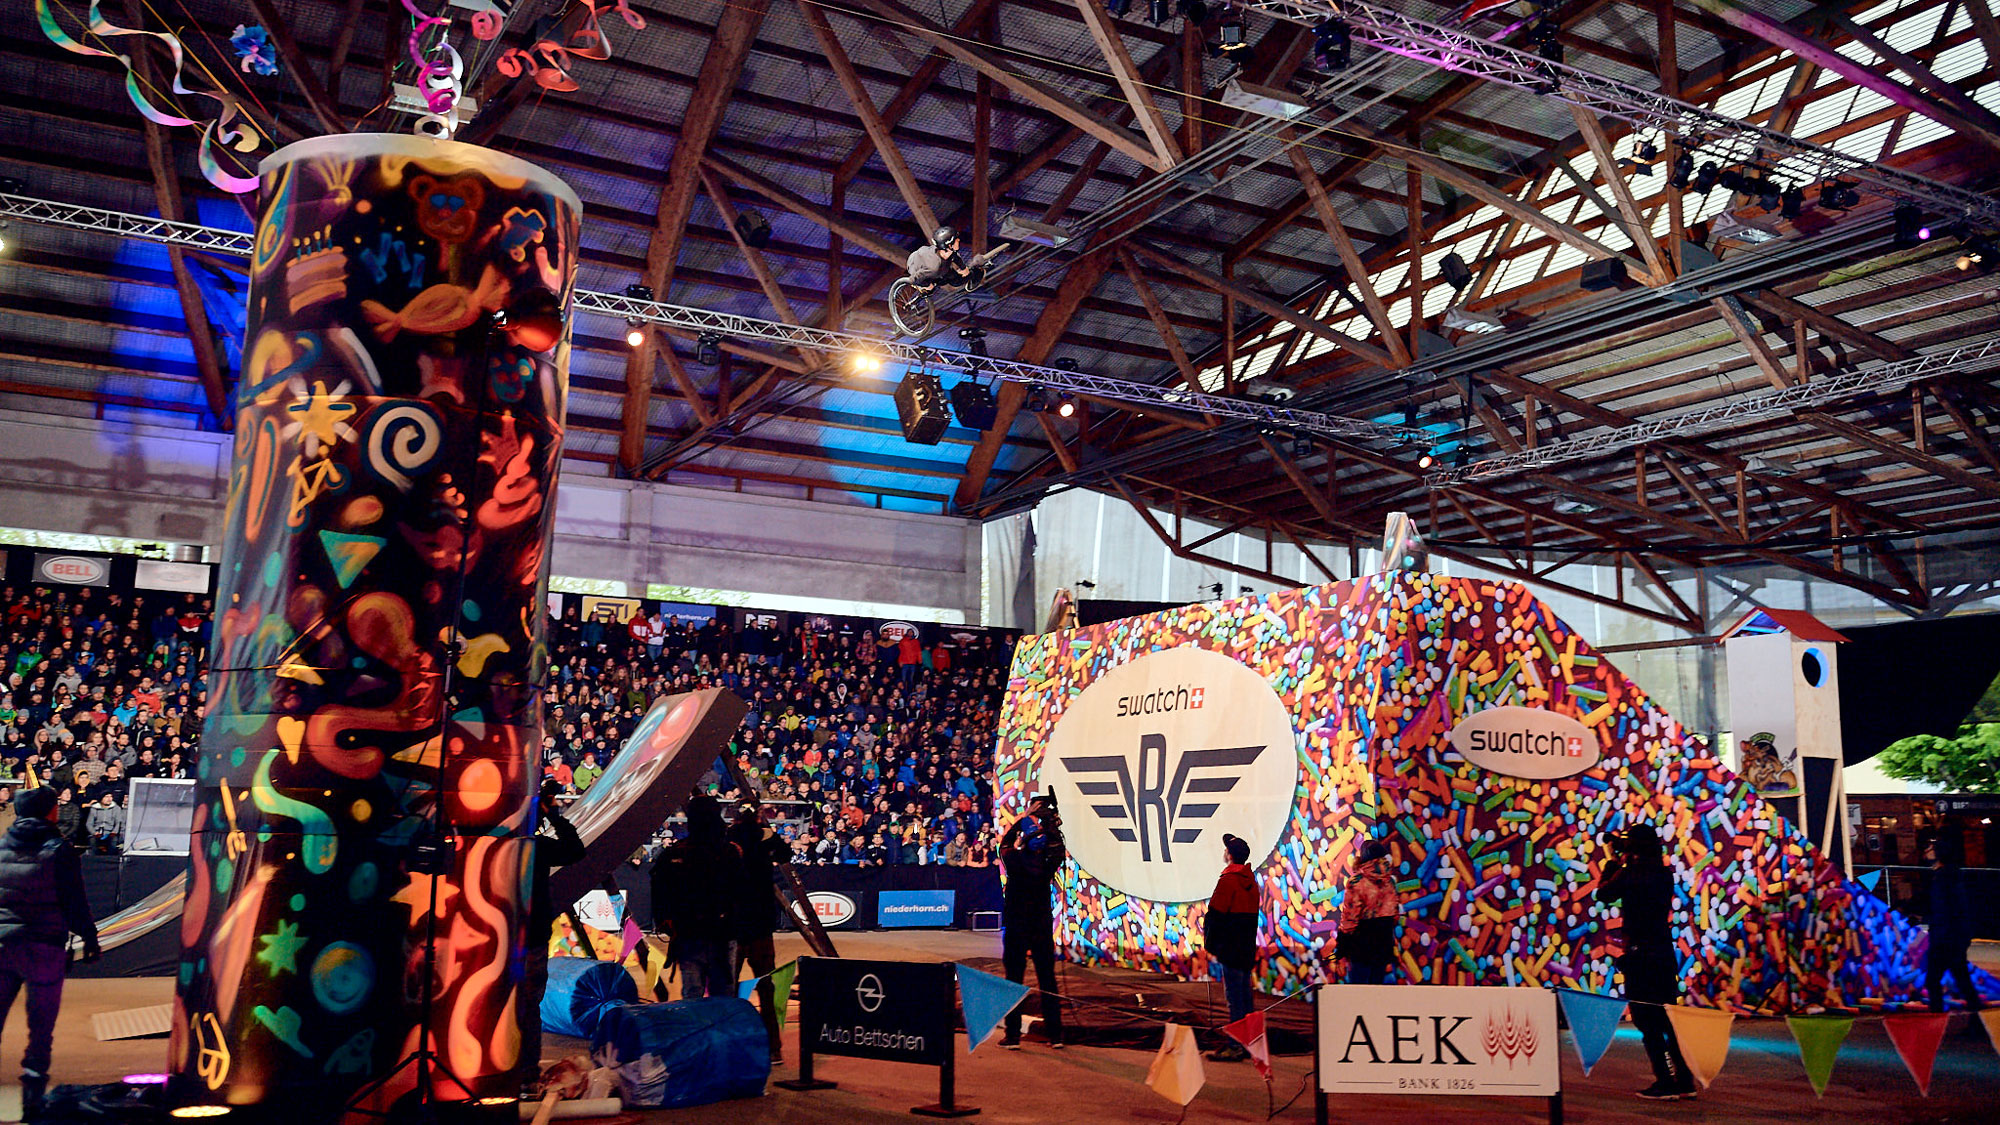 Die AEK BANK 1826 unterstützte im 2019 insgesamt 745 Vereine, Projekte und Anlässe in ihrem Geschäftsgebiet.